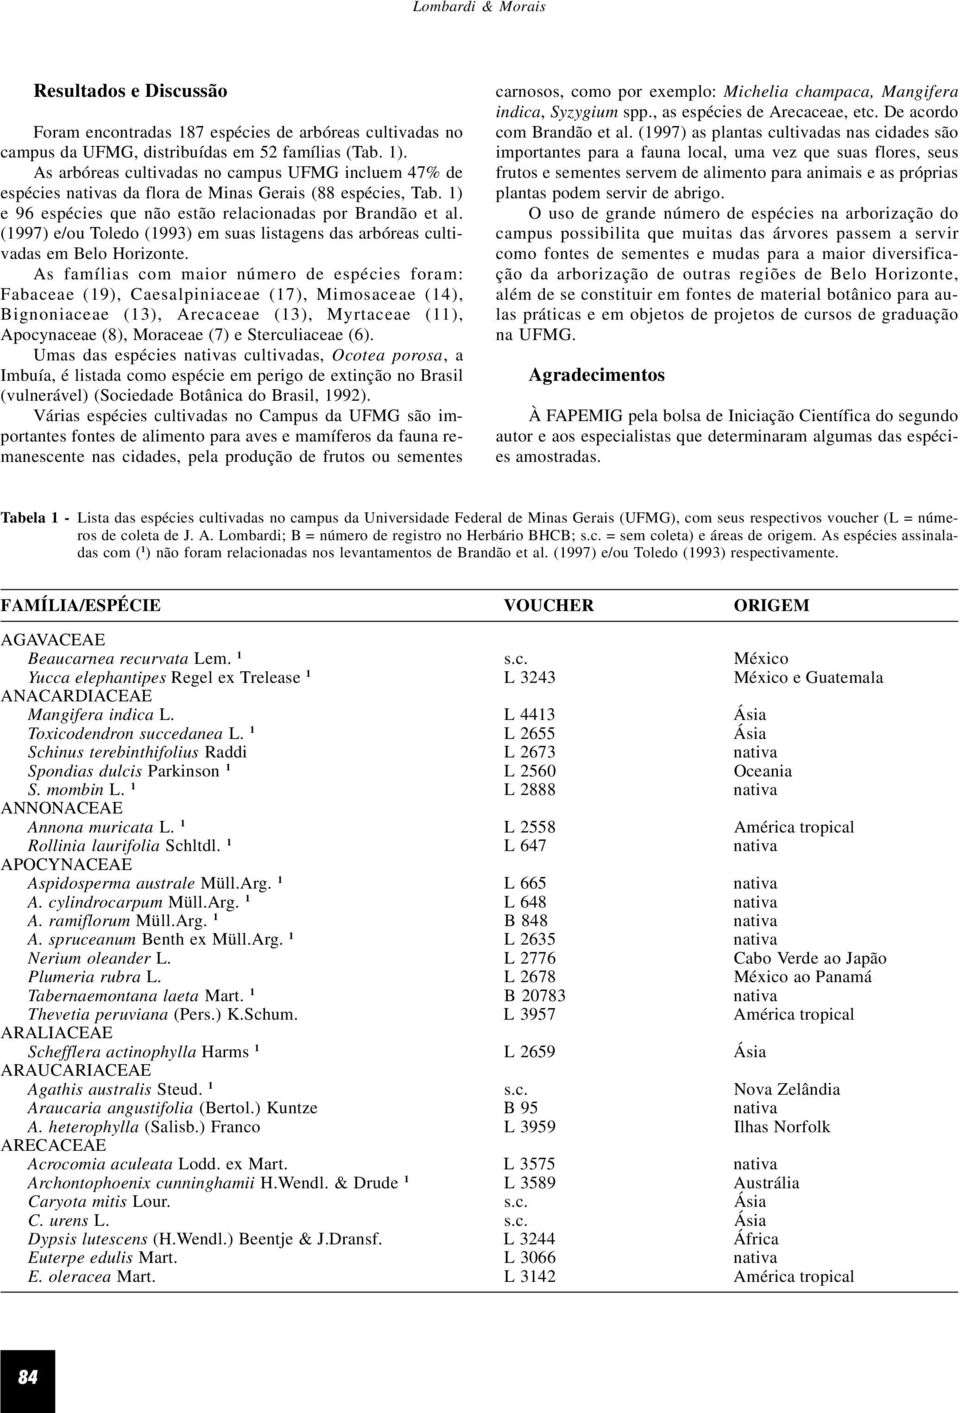 (1997) e/ou Toledo (1993) em suas listagens das arbóreas cultivadas em Belo Horizonte.